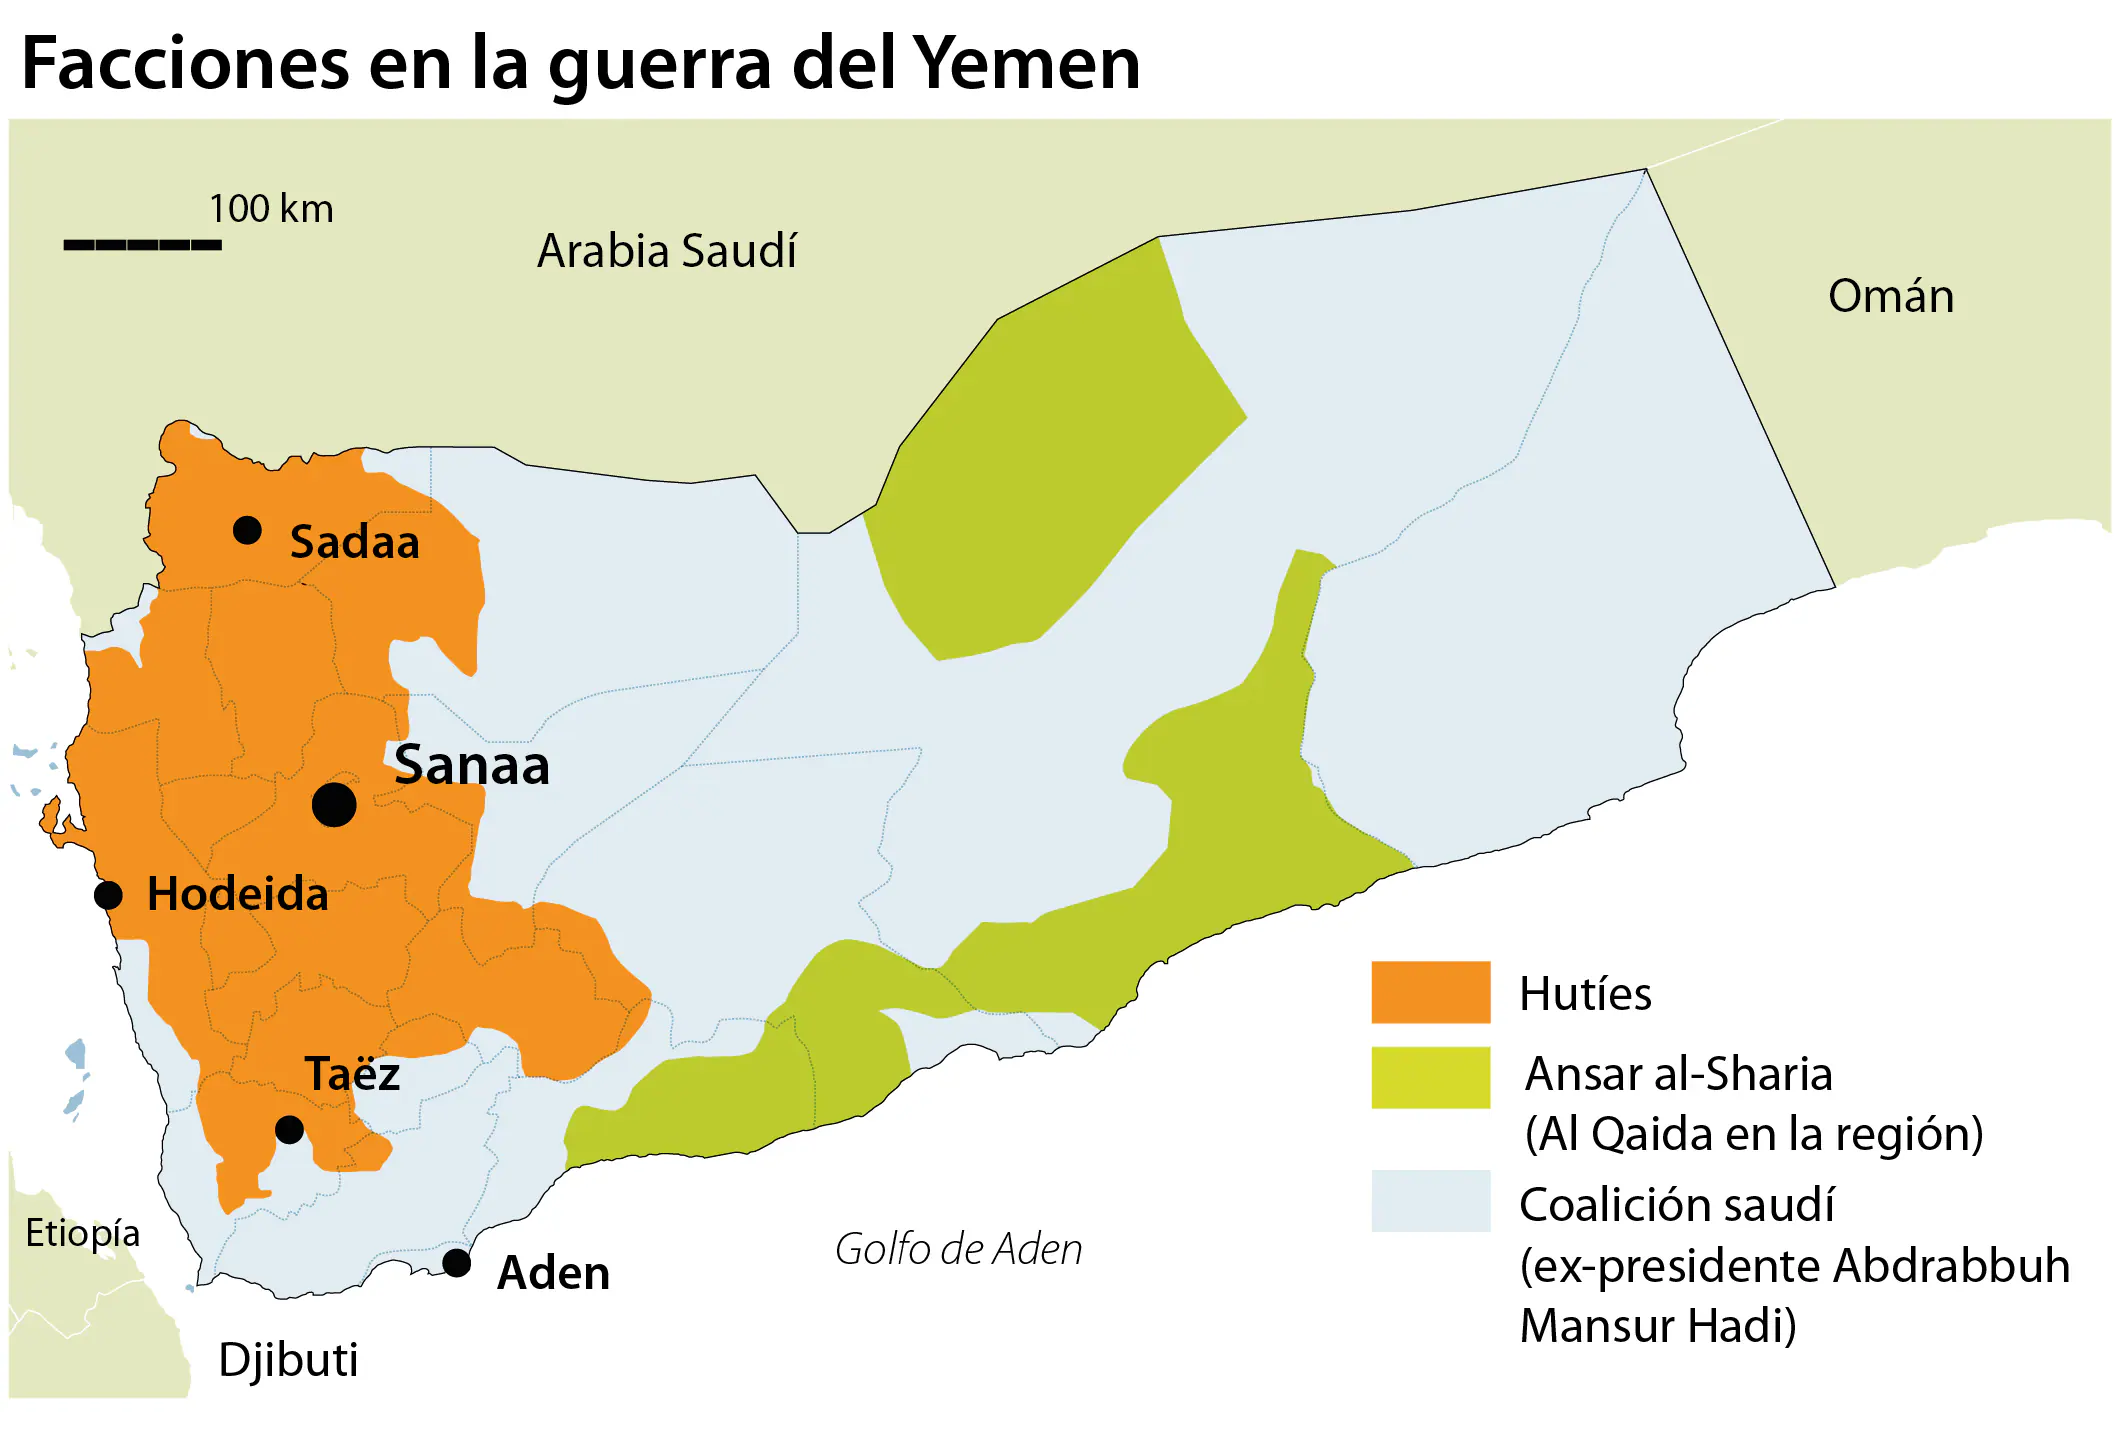 Arabia Saudí relaja el bombardeo de Yemen por la presión internacional